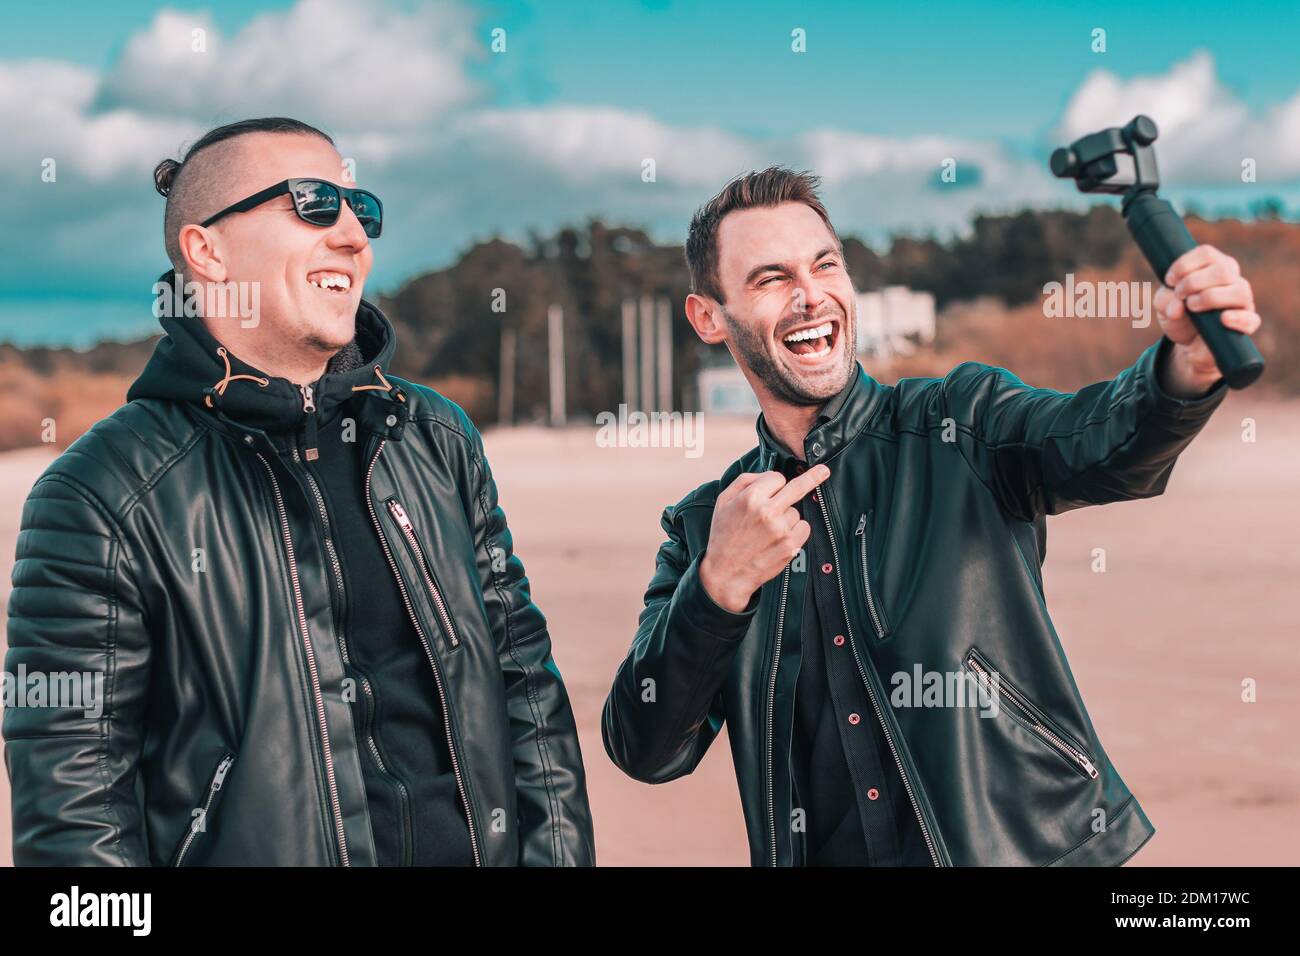 Zwei gutaussehende lächelnde Freunde machen Selfie mit Action-Kamera mit Gimbal Stabilisator am Strand. Jugendliche Männer in schwarzen Kleidern Spaß haben, indem Sie Fotos Stockfoto